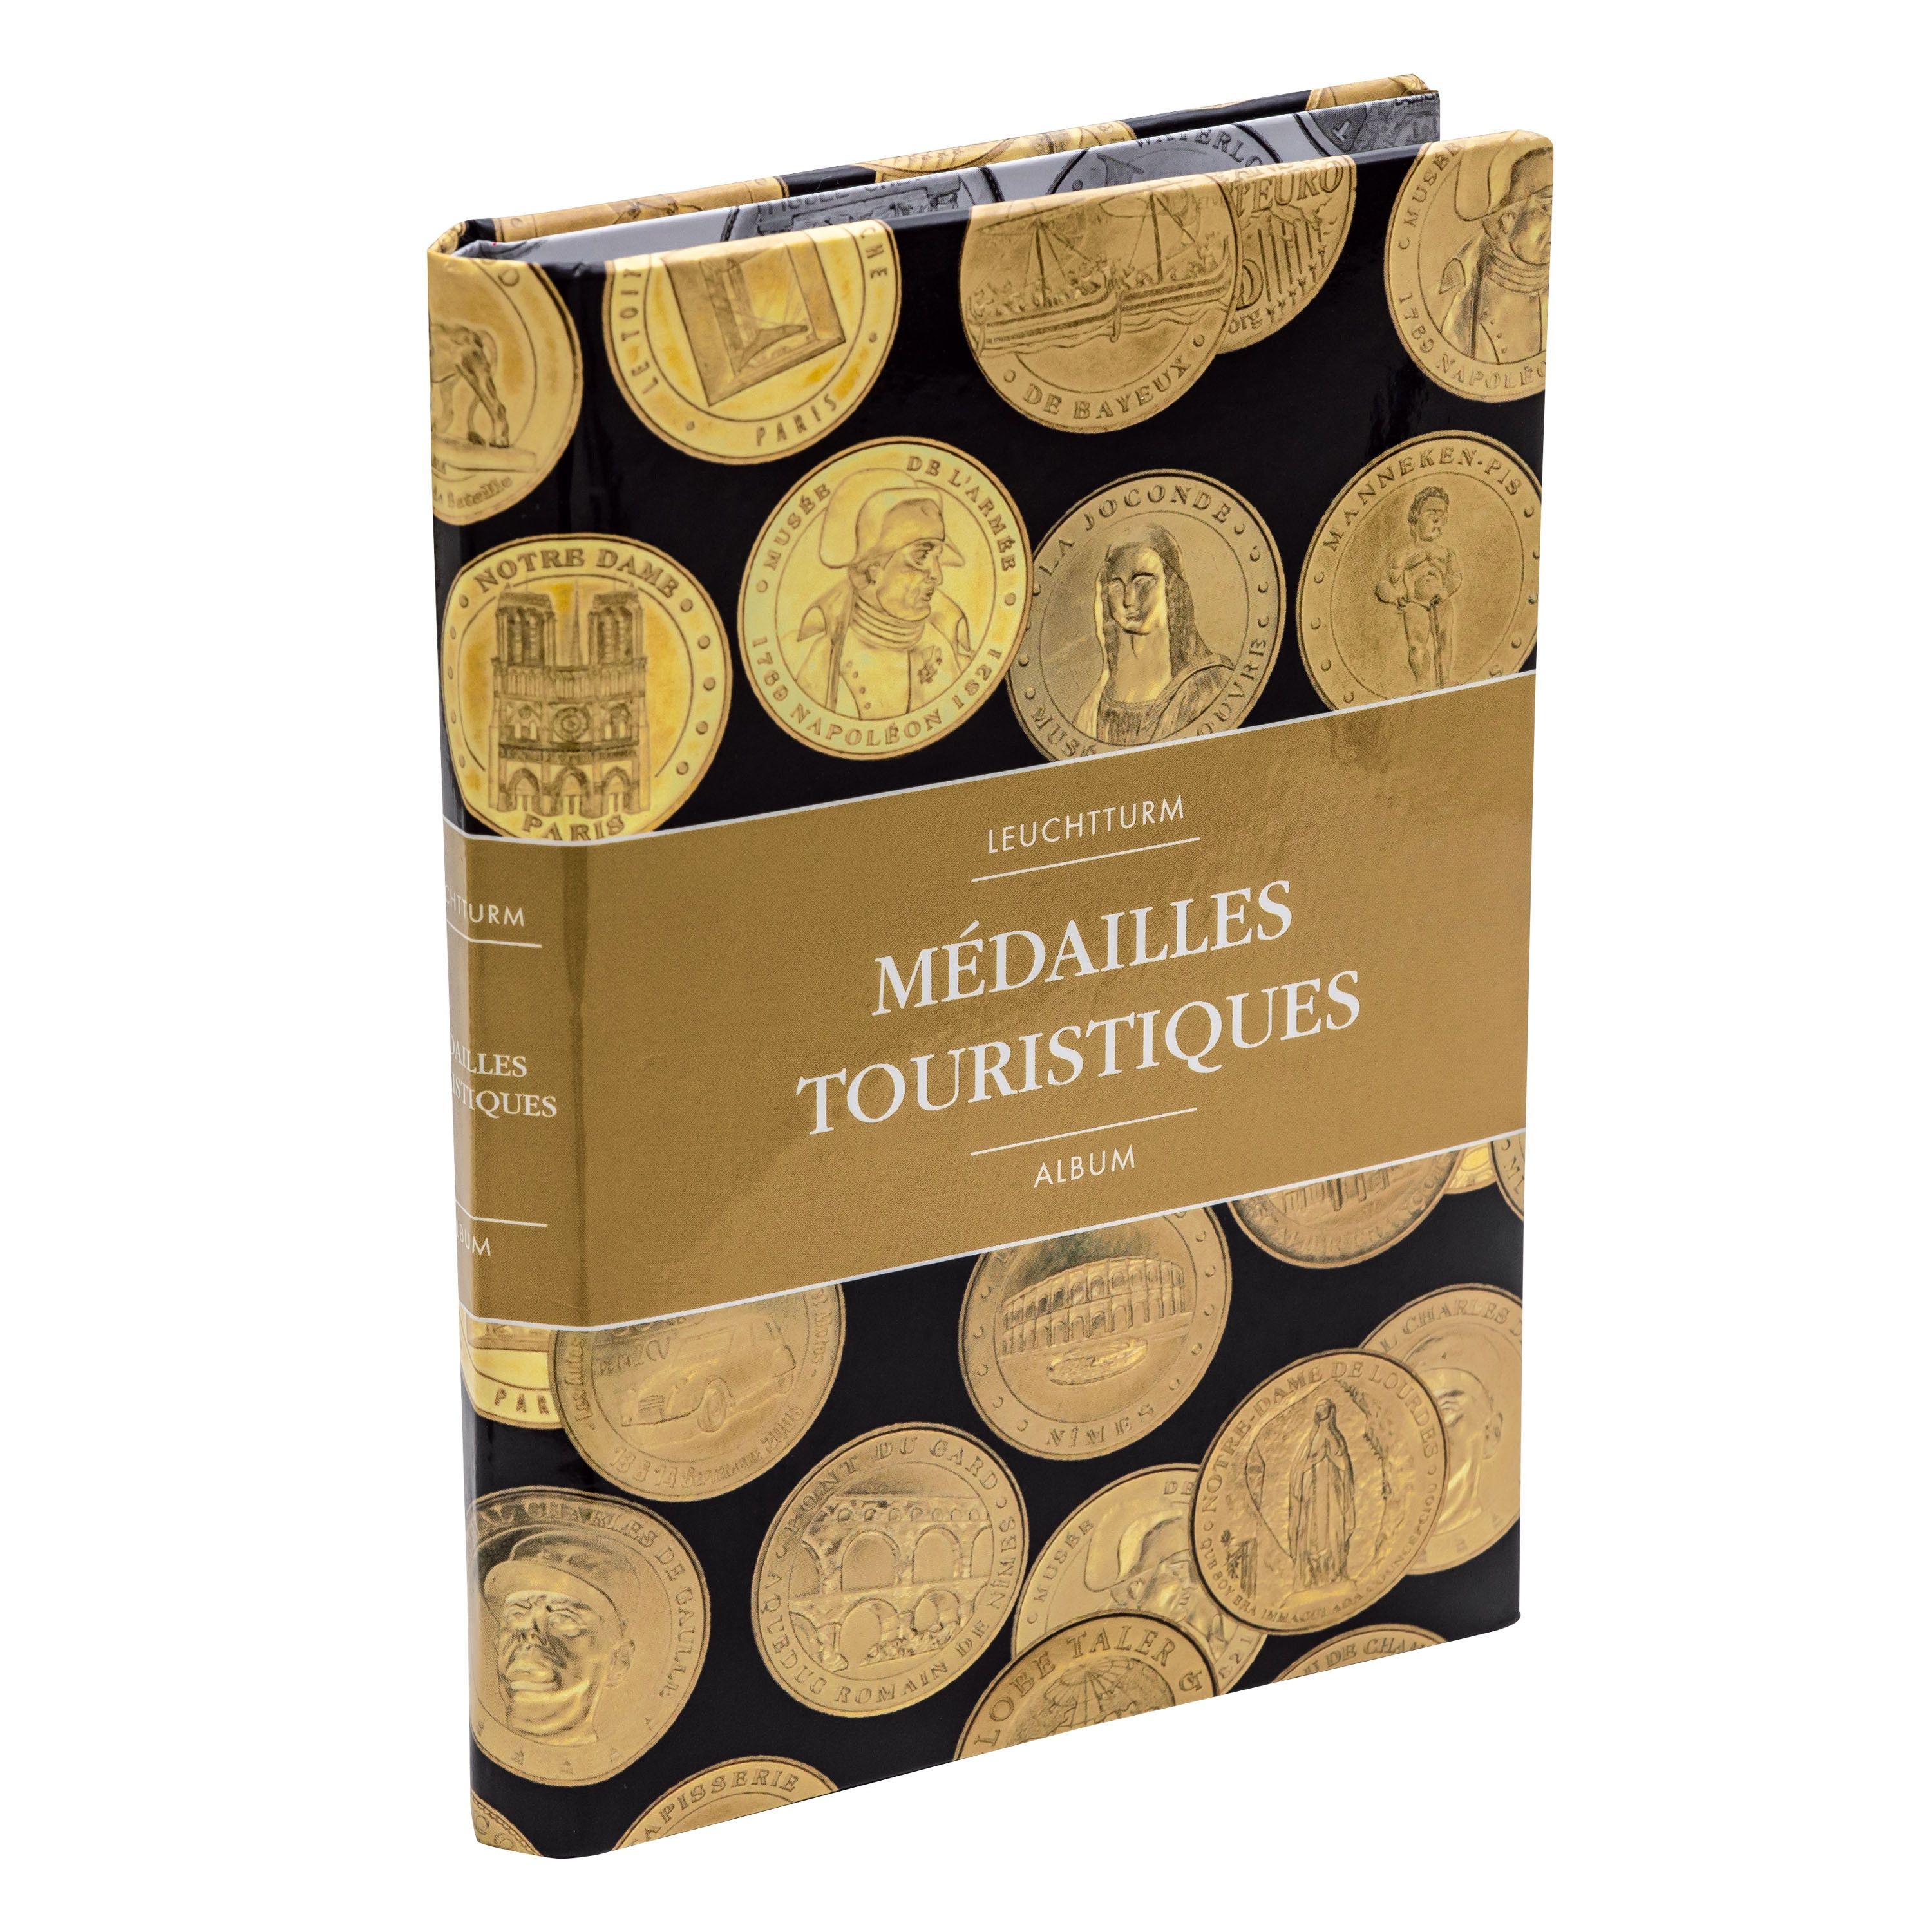 Album de poche illustré pour 36 médailles touristiques. - Philantologie